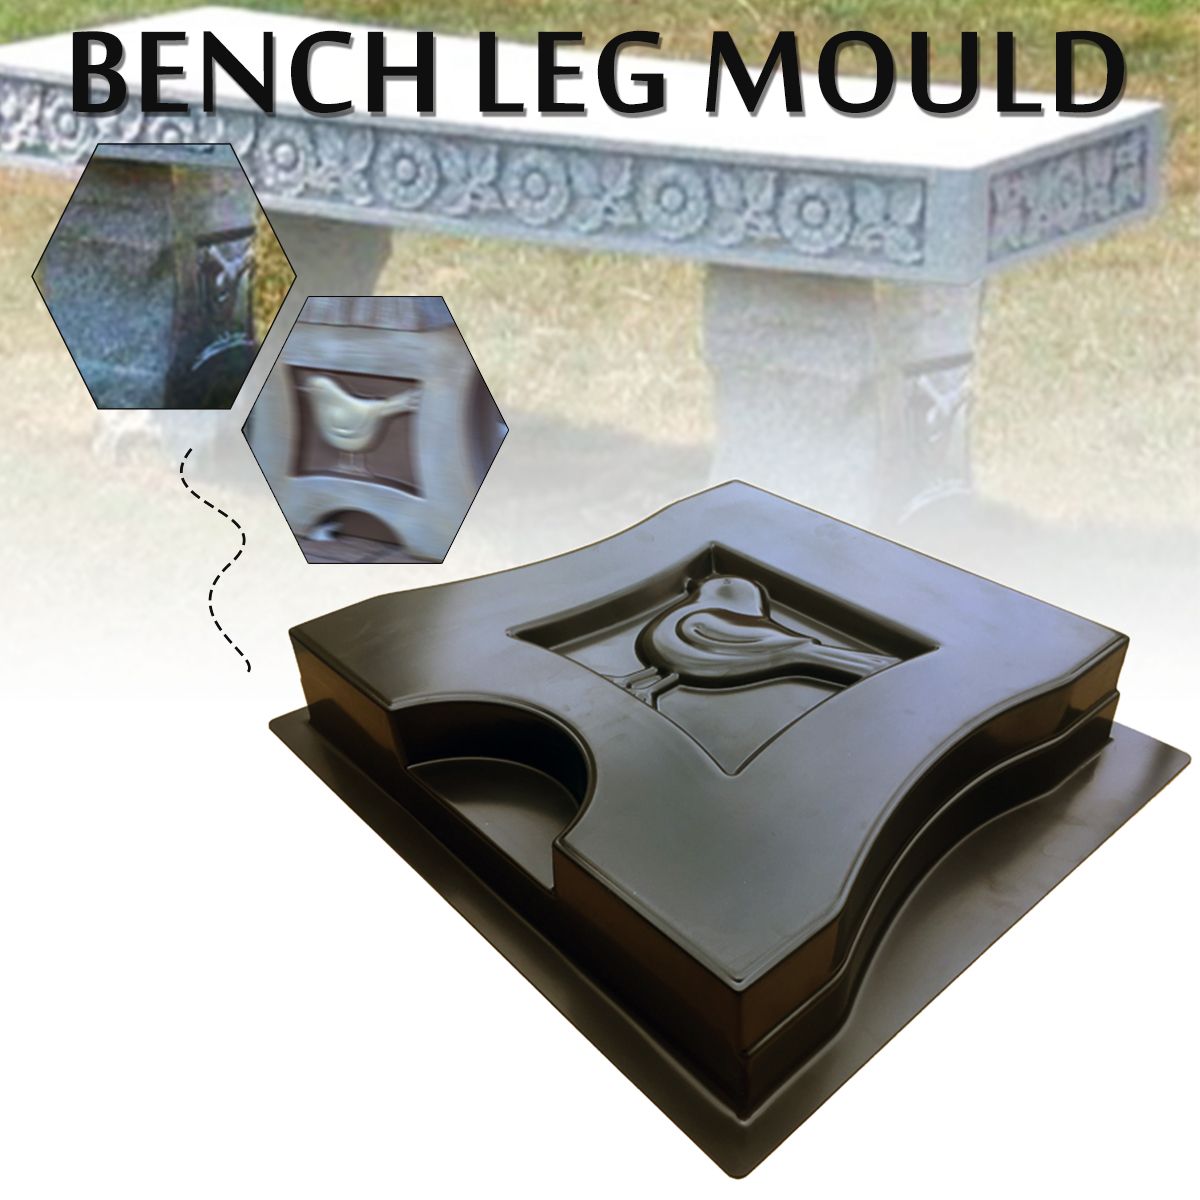 Bench-Leg-Mould-Garden-Concrete-Paving-Cement-Mold-Stone-Chair-Patio-Path-Decorations-1634582